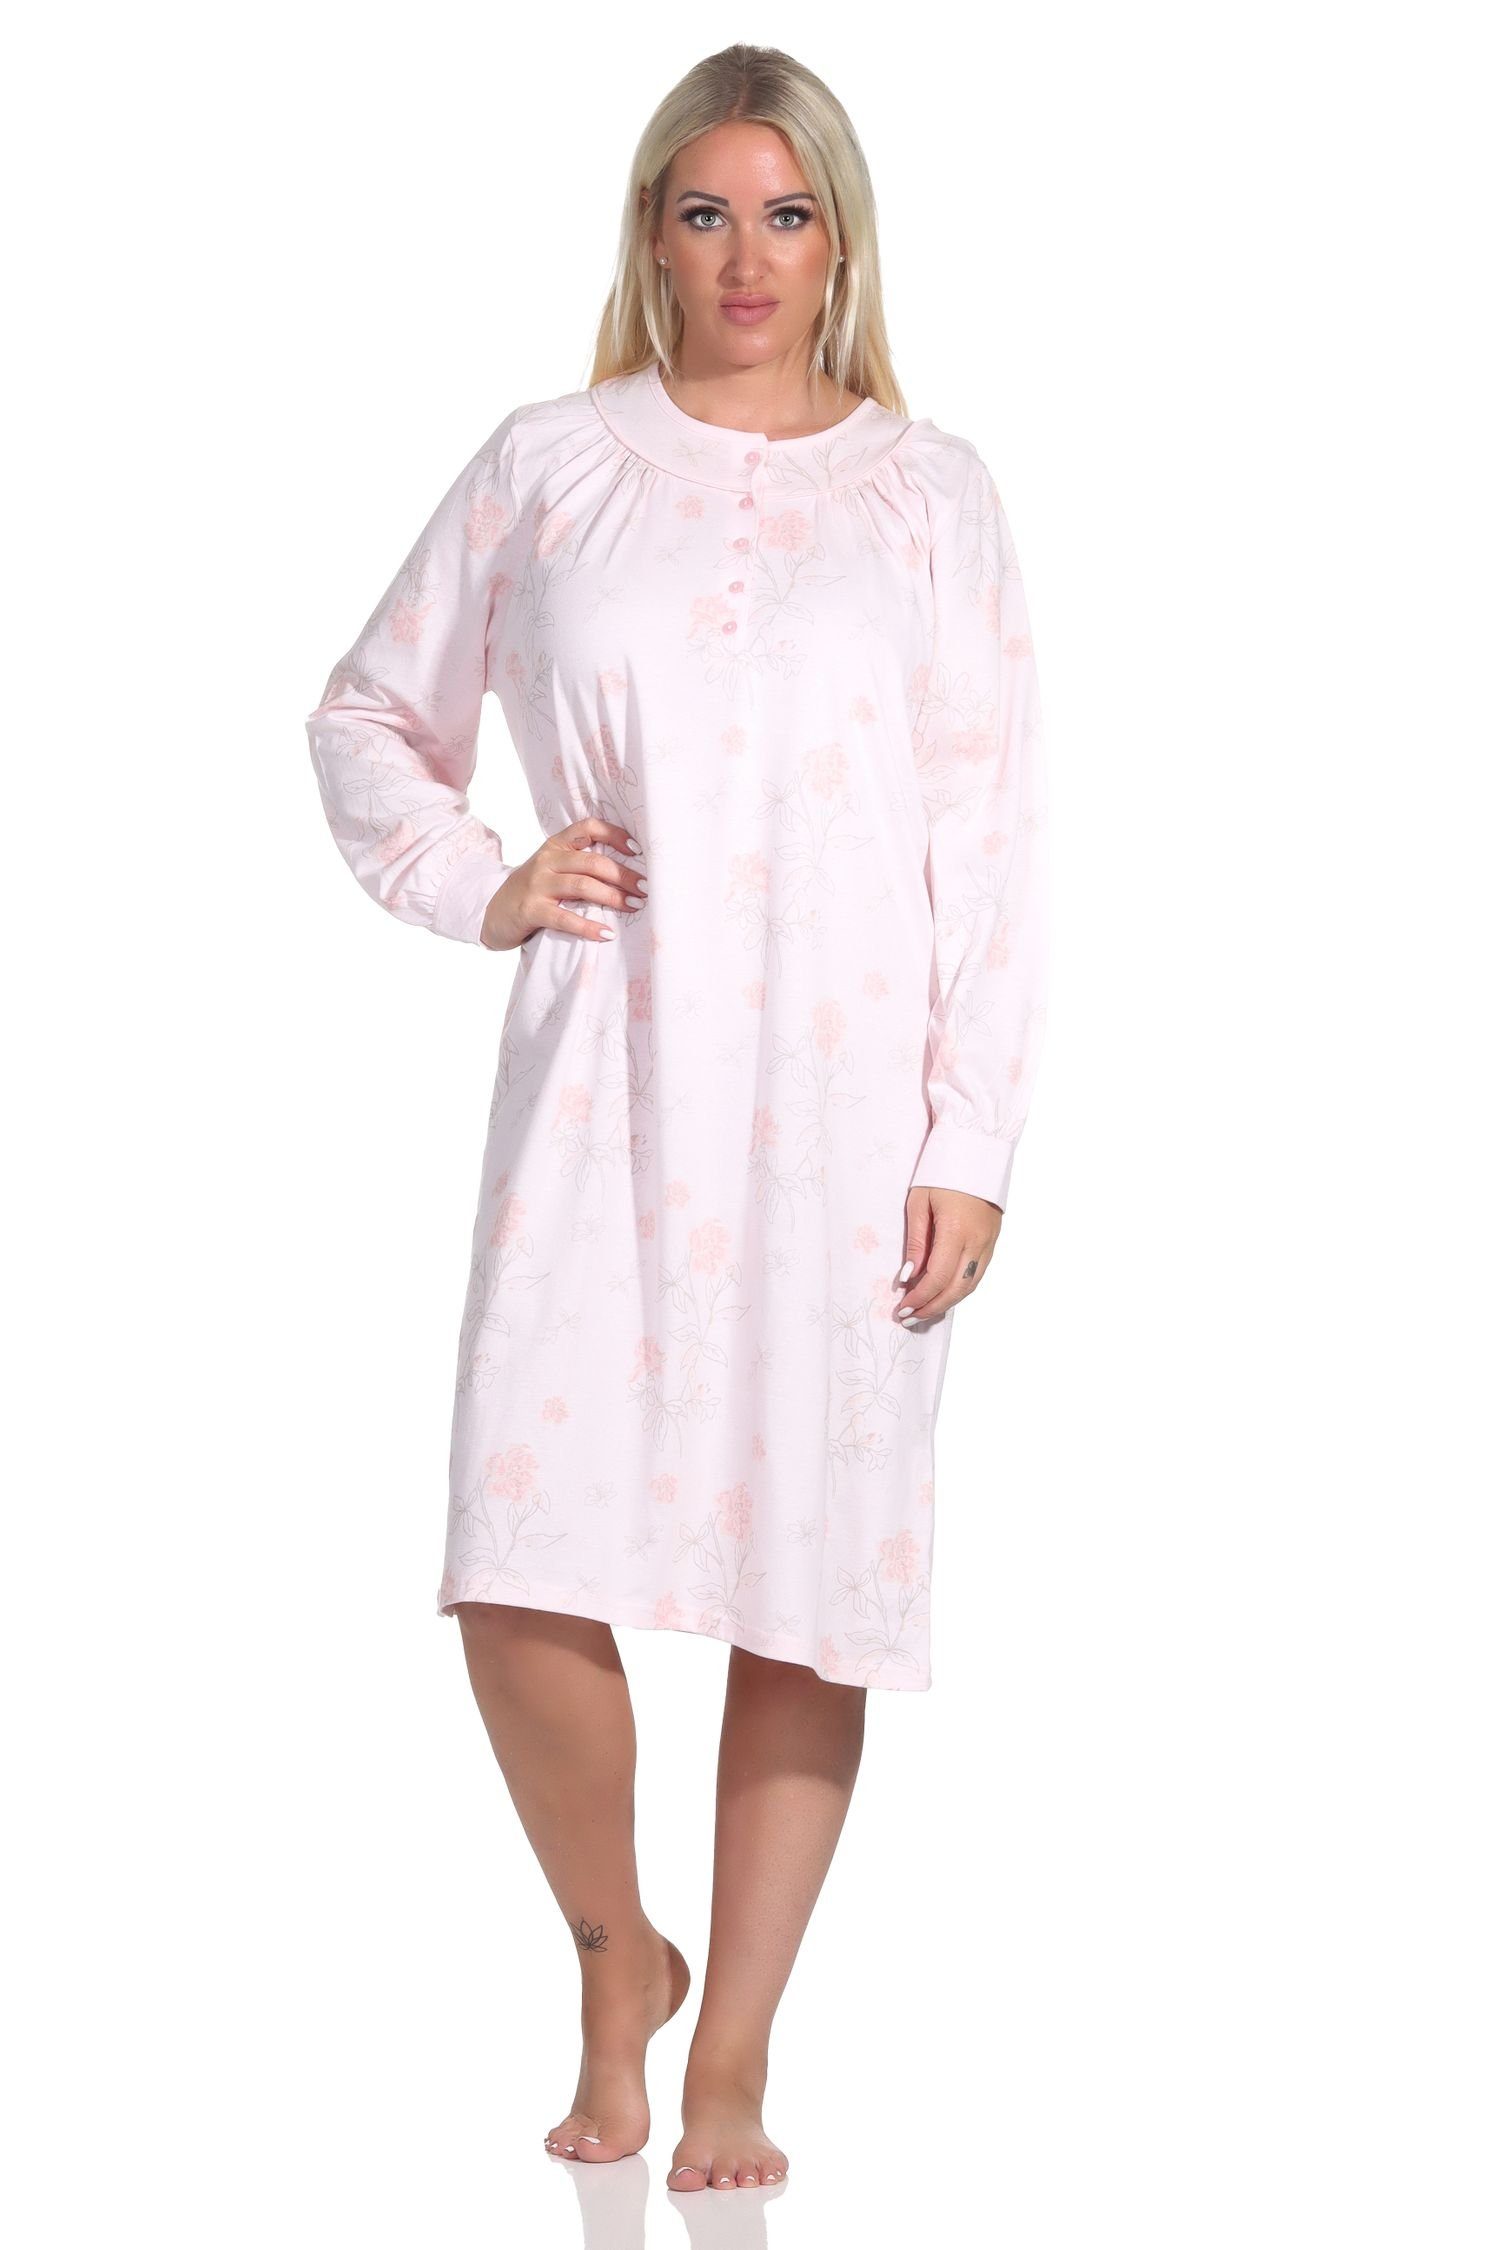 Normann Nachthemd Damen Nachthemd langarm in fraulicher Optik mit Knopfleiste am Hals rosa | Nachthemden